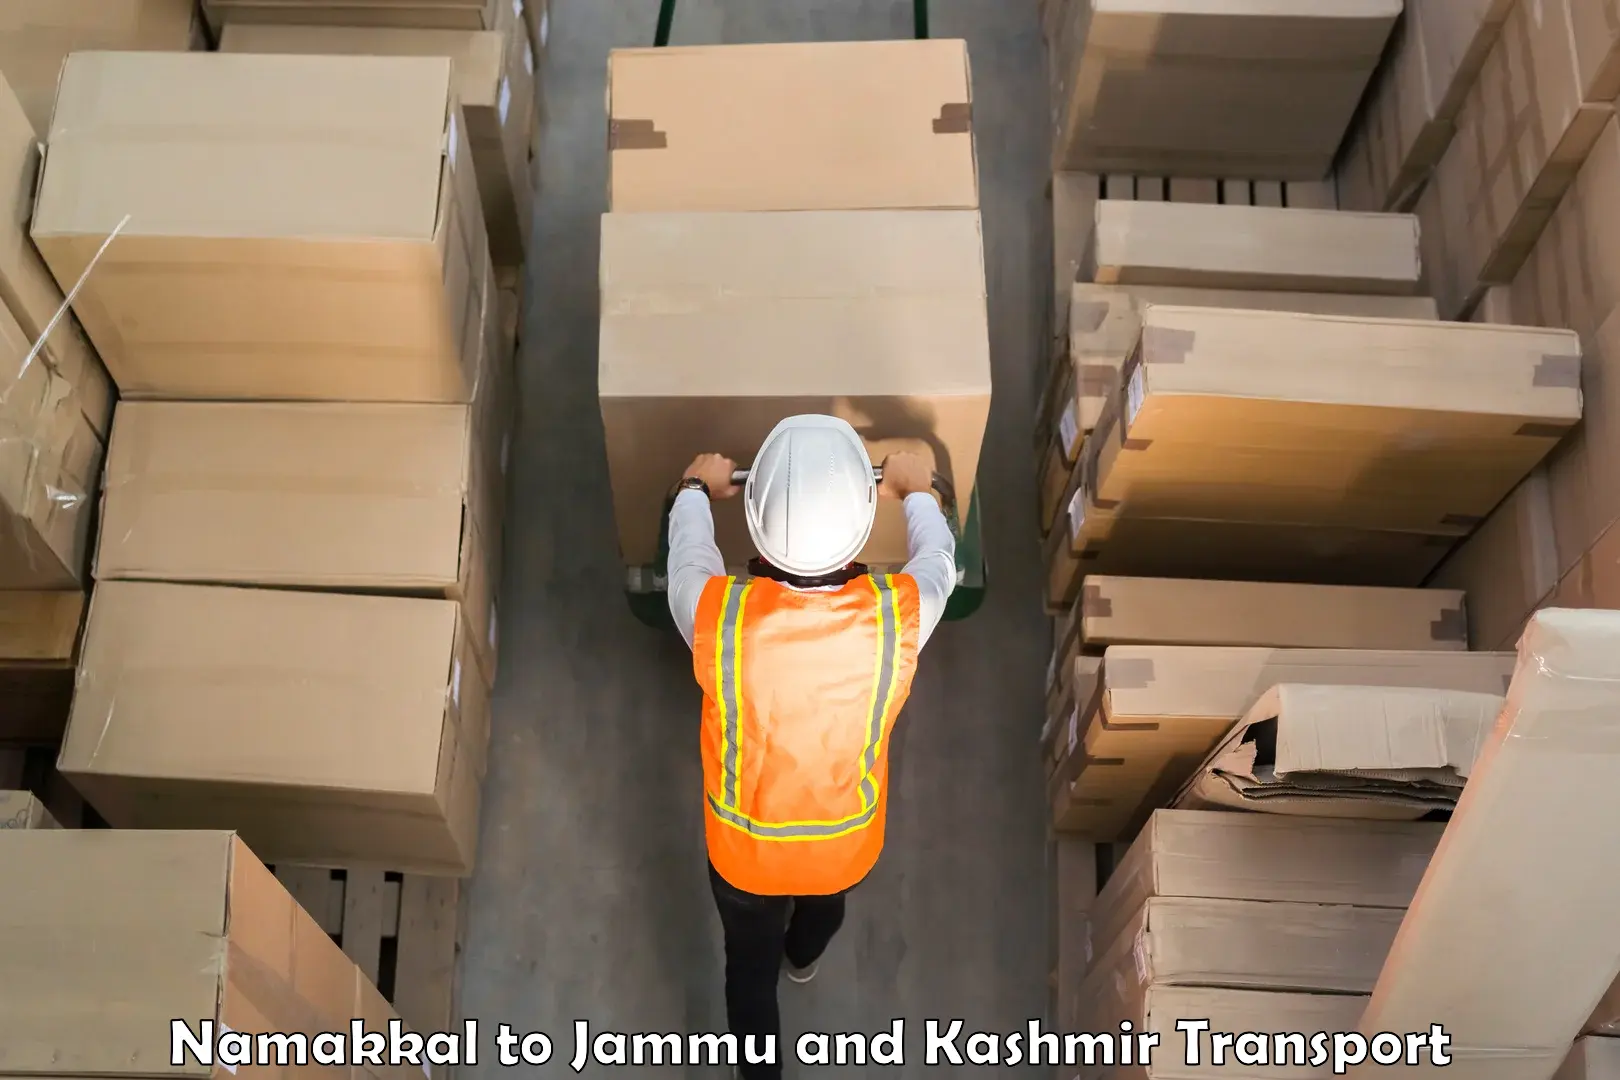 Furniture transport service Namakkal to Jammu and Kashmir